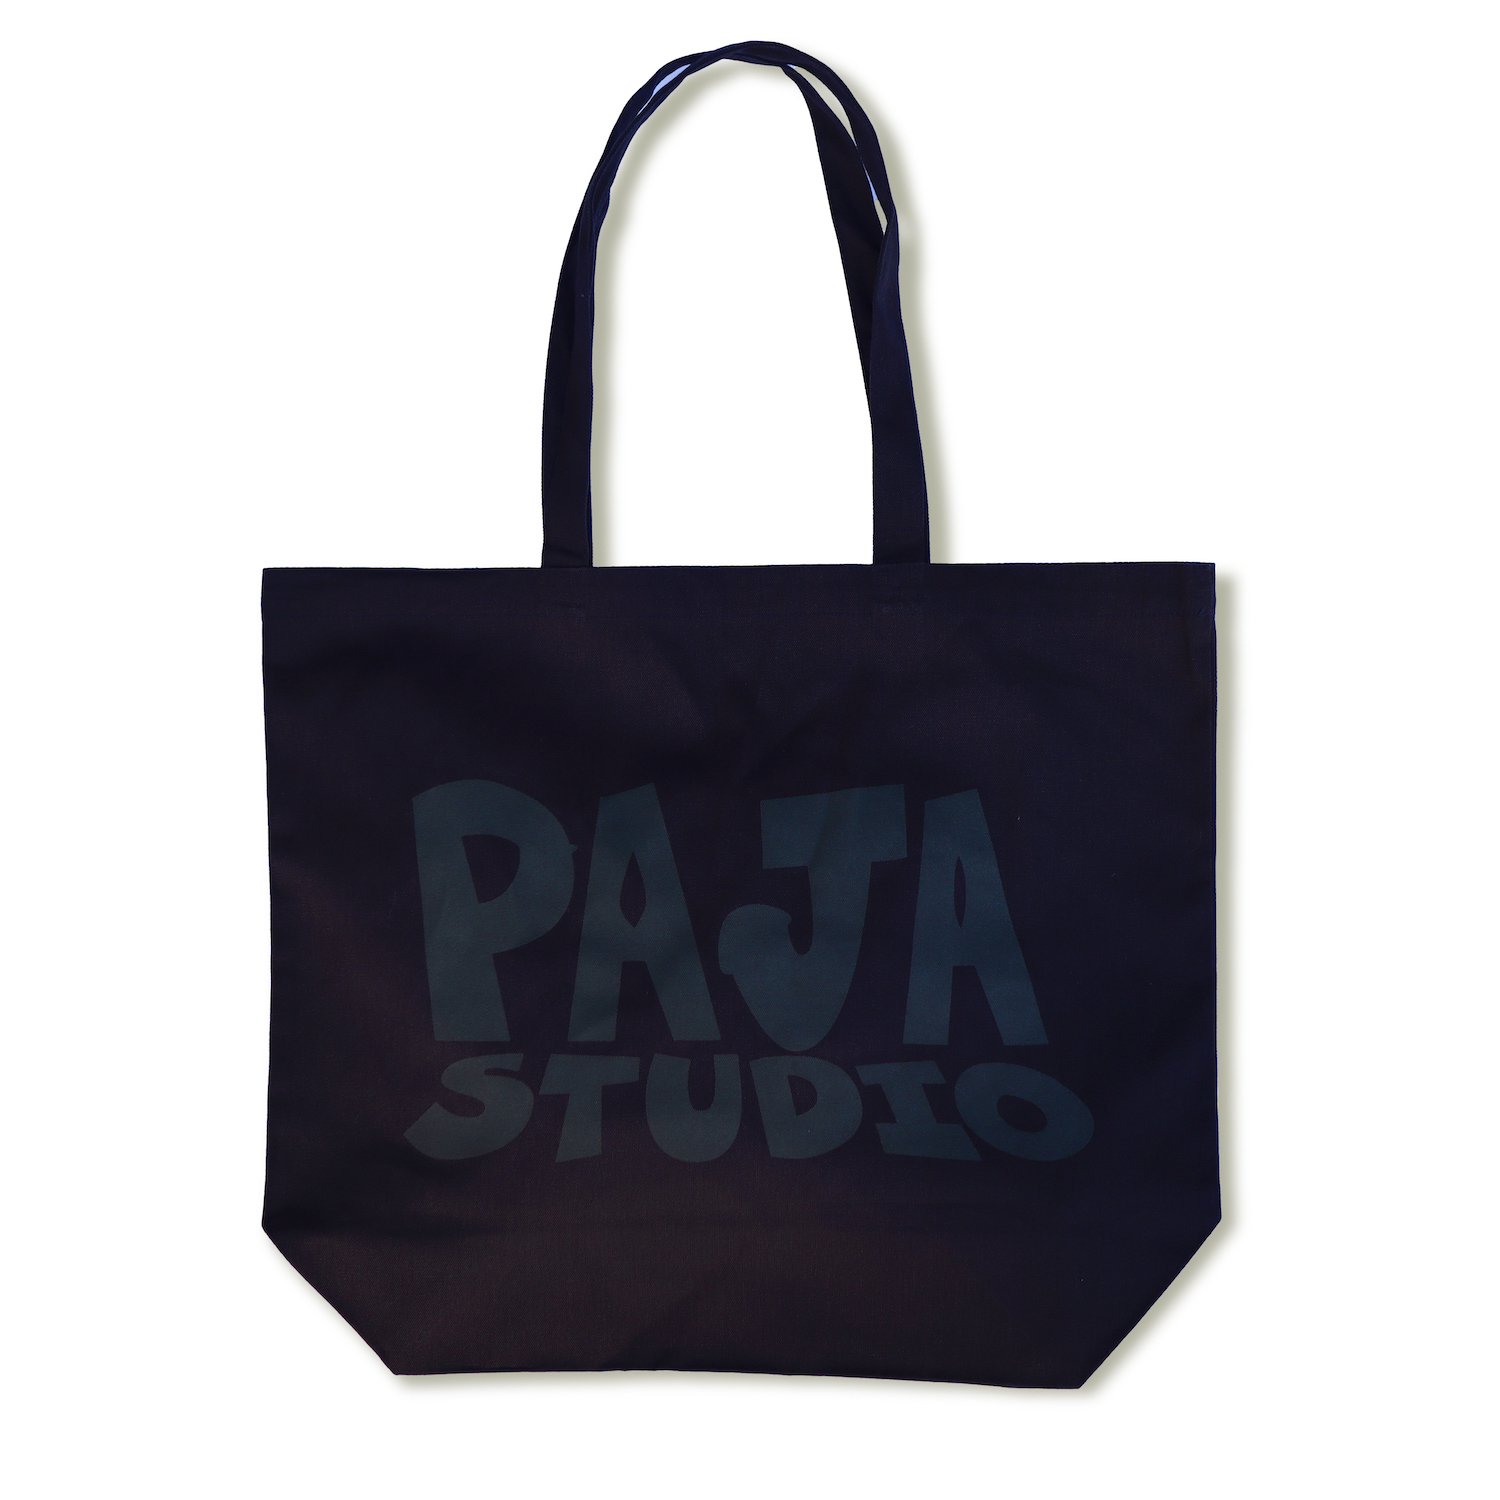 PAJA STUDIO<br>Logo Tote Bag<br>